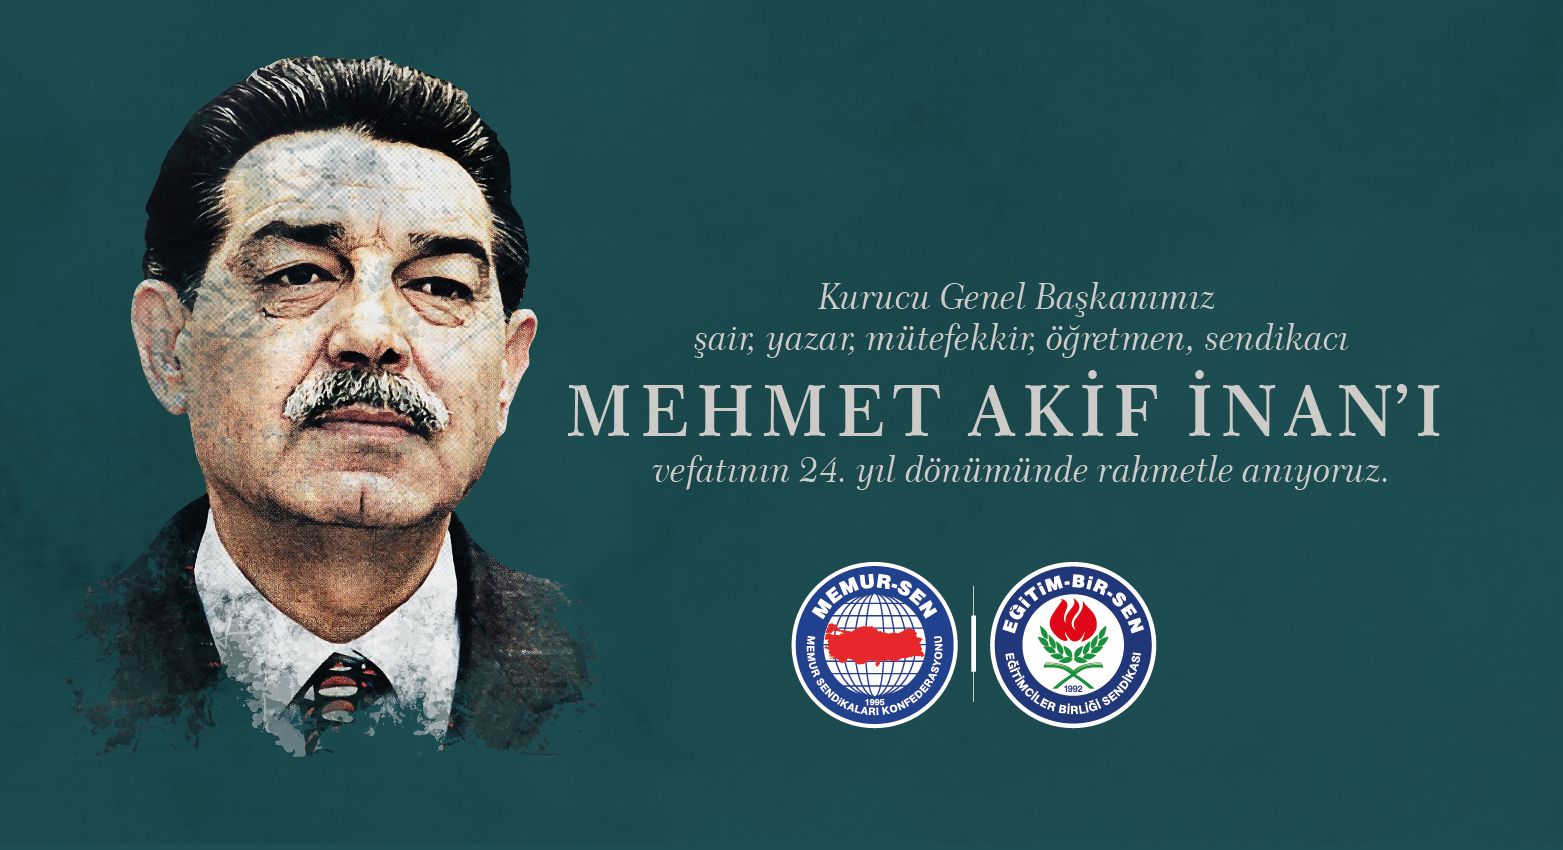 Kurucu genel başkanımız Mehmet Akif İnan ’ı rahmetle anıyoruz...